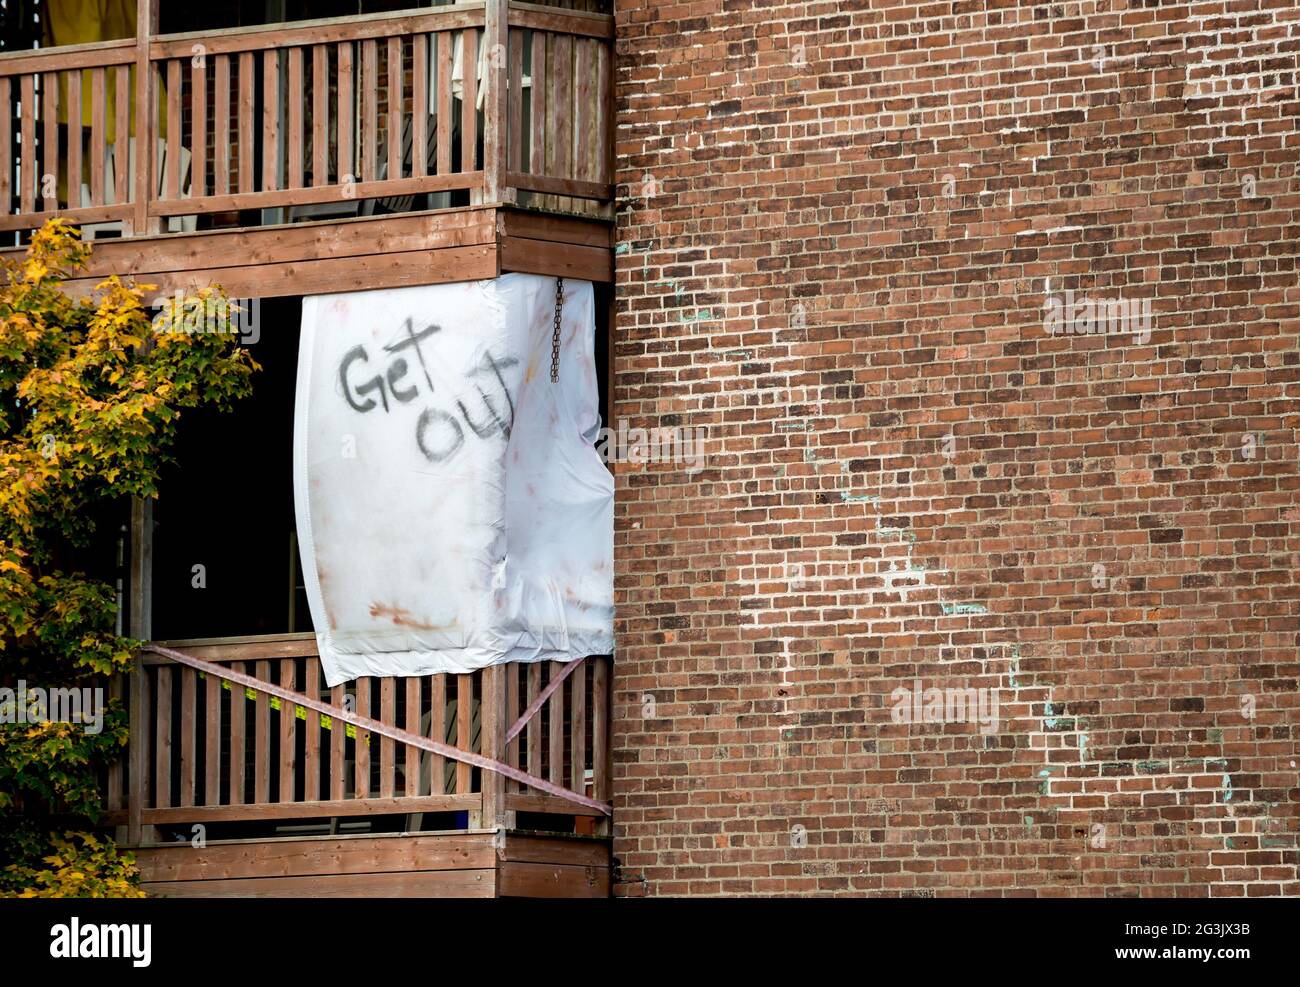 Ein Laken hing auf dem Deck eines gemauerten Wohnhauses. Auf dem Blatt stehen die Worte „Get out“. Rechts ist Platz für Text. Stockfoto